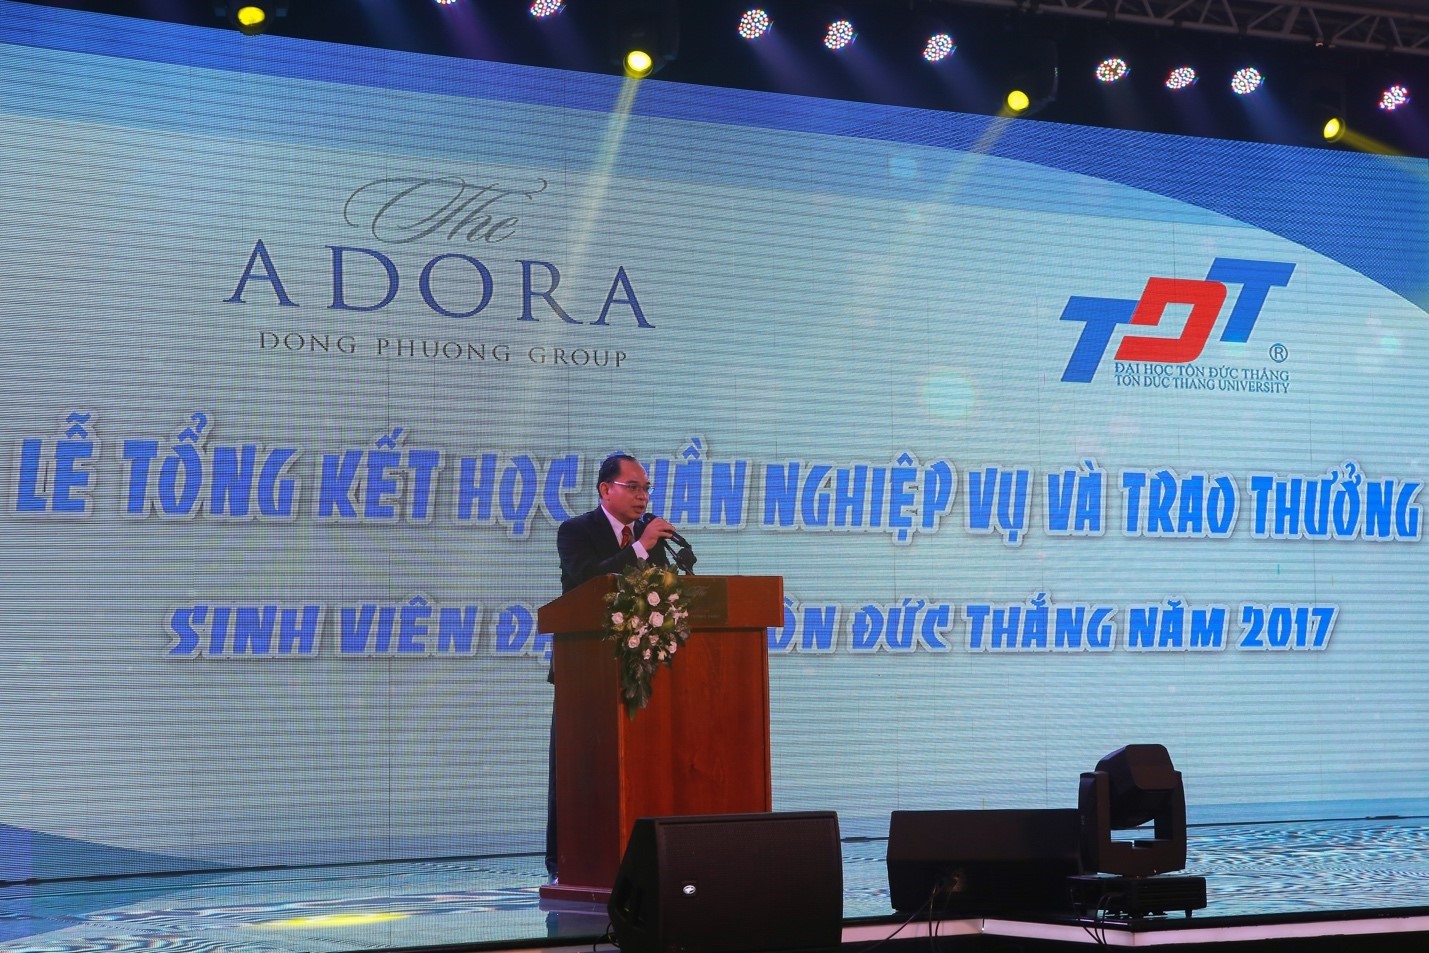 Hình 1: Ông Bùi Tiến Đạt – Giám đốc nhân sự The Adora Dong Phuong Group phát biểu về buổi lễ tổng kết